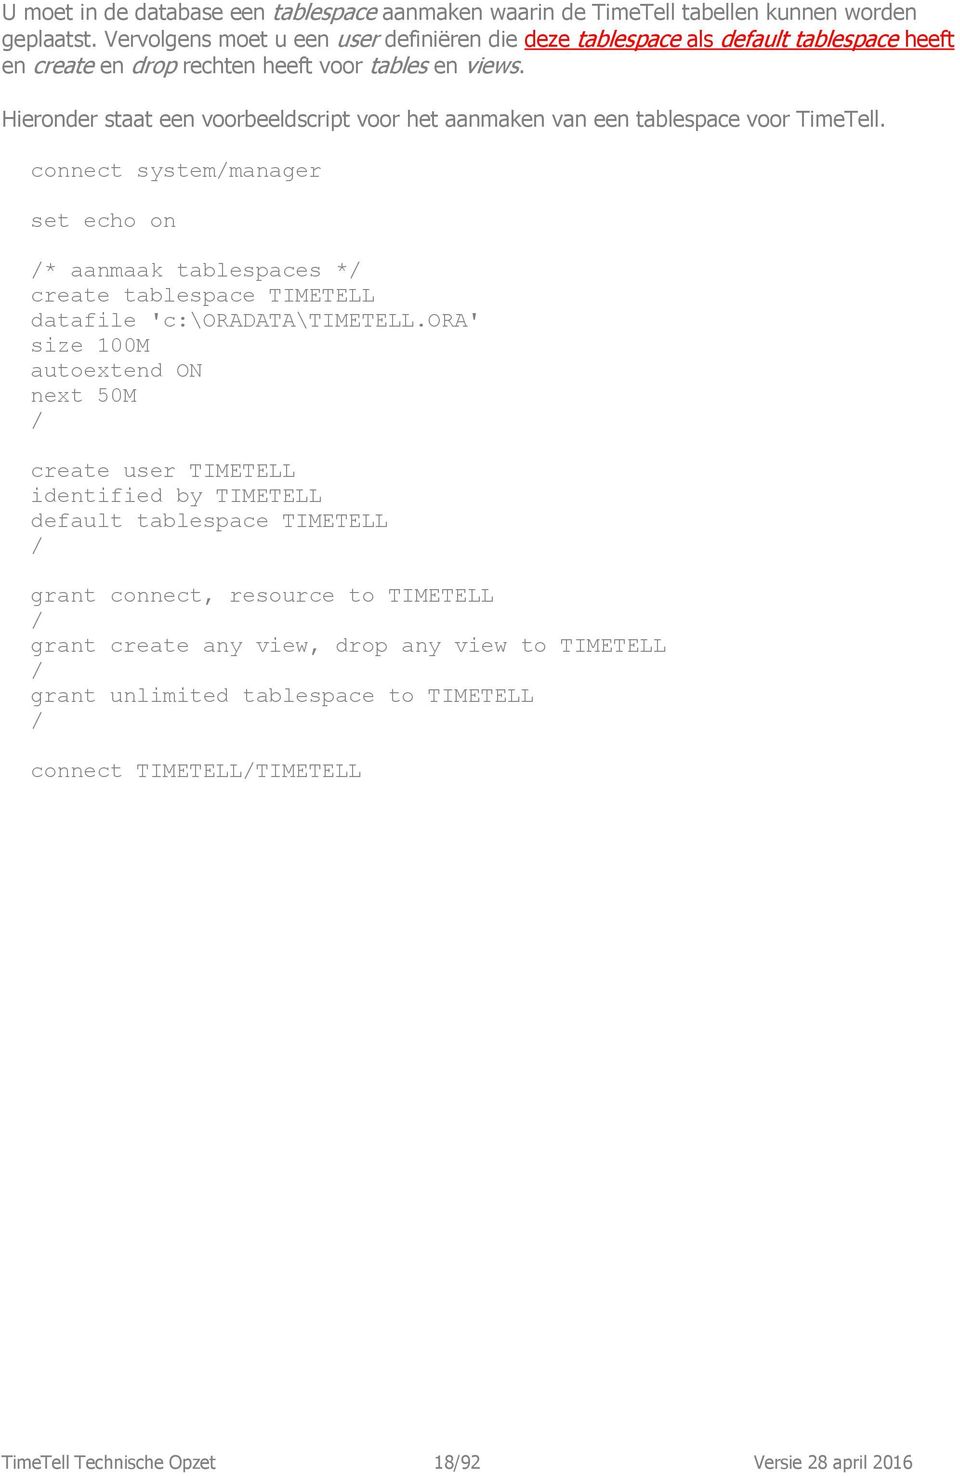 Hieronder staat een voorbeeldscript voor het aanmaken van een tablespace voor TimeTell.